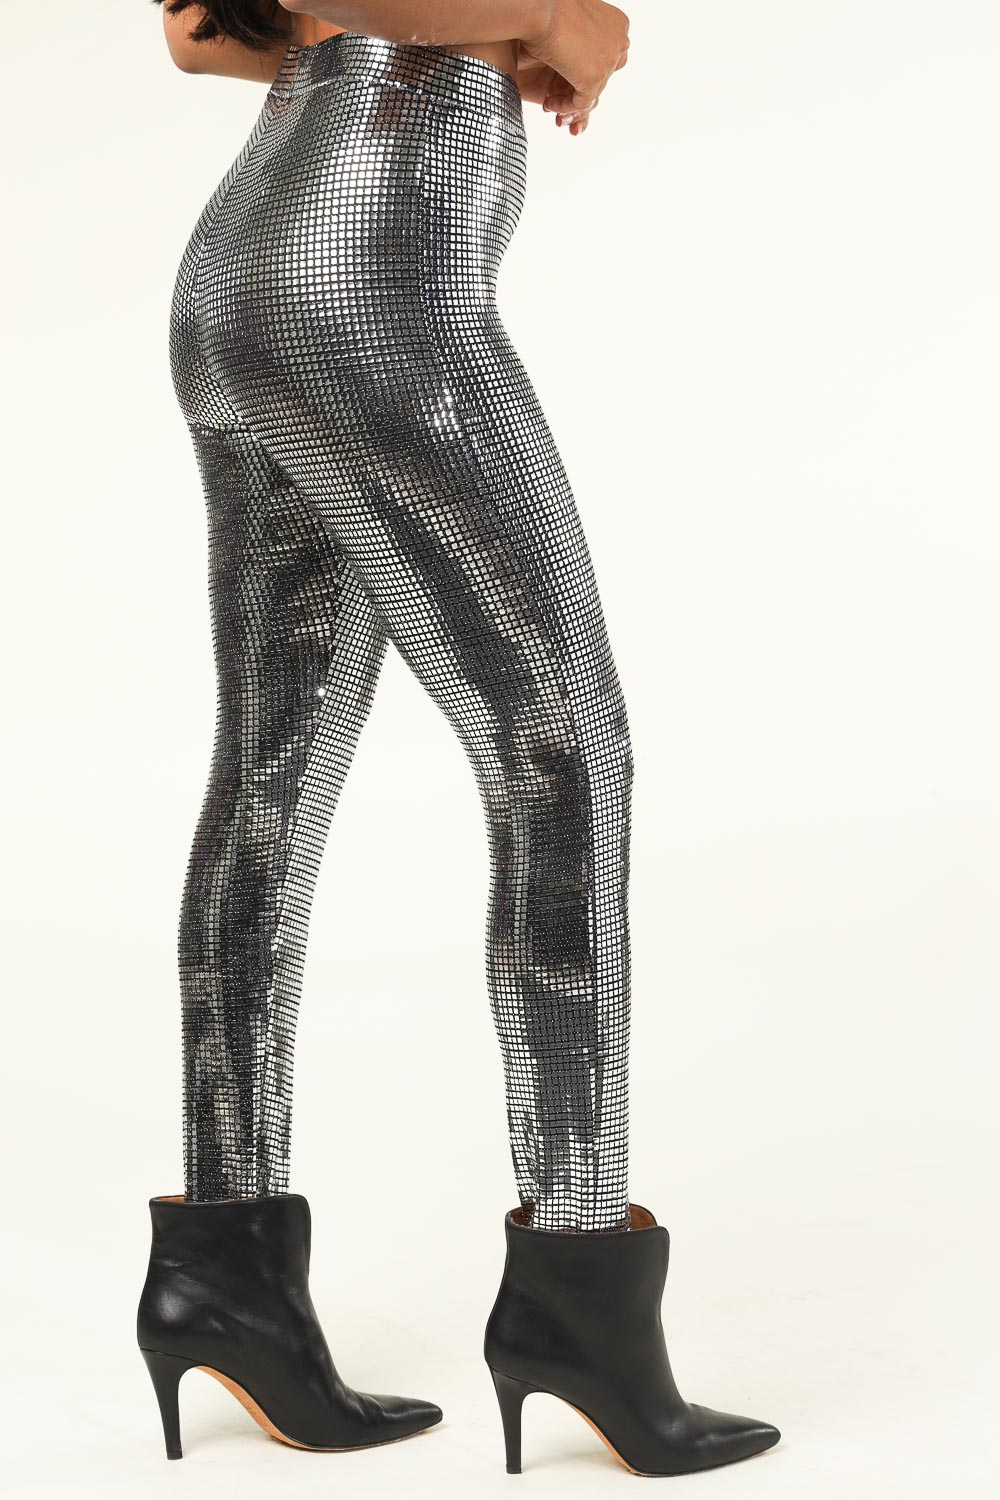 Forever 21 Coated Metallic Leggings | Winter fashion outfits casual,  Outfits with leggings, Metallic leggings